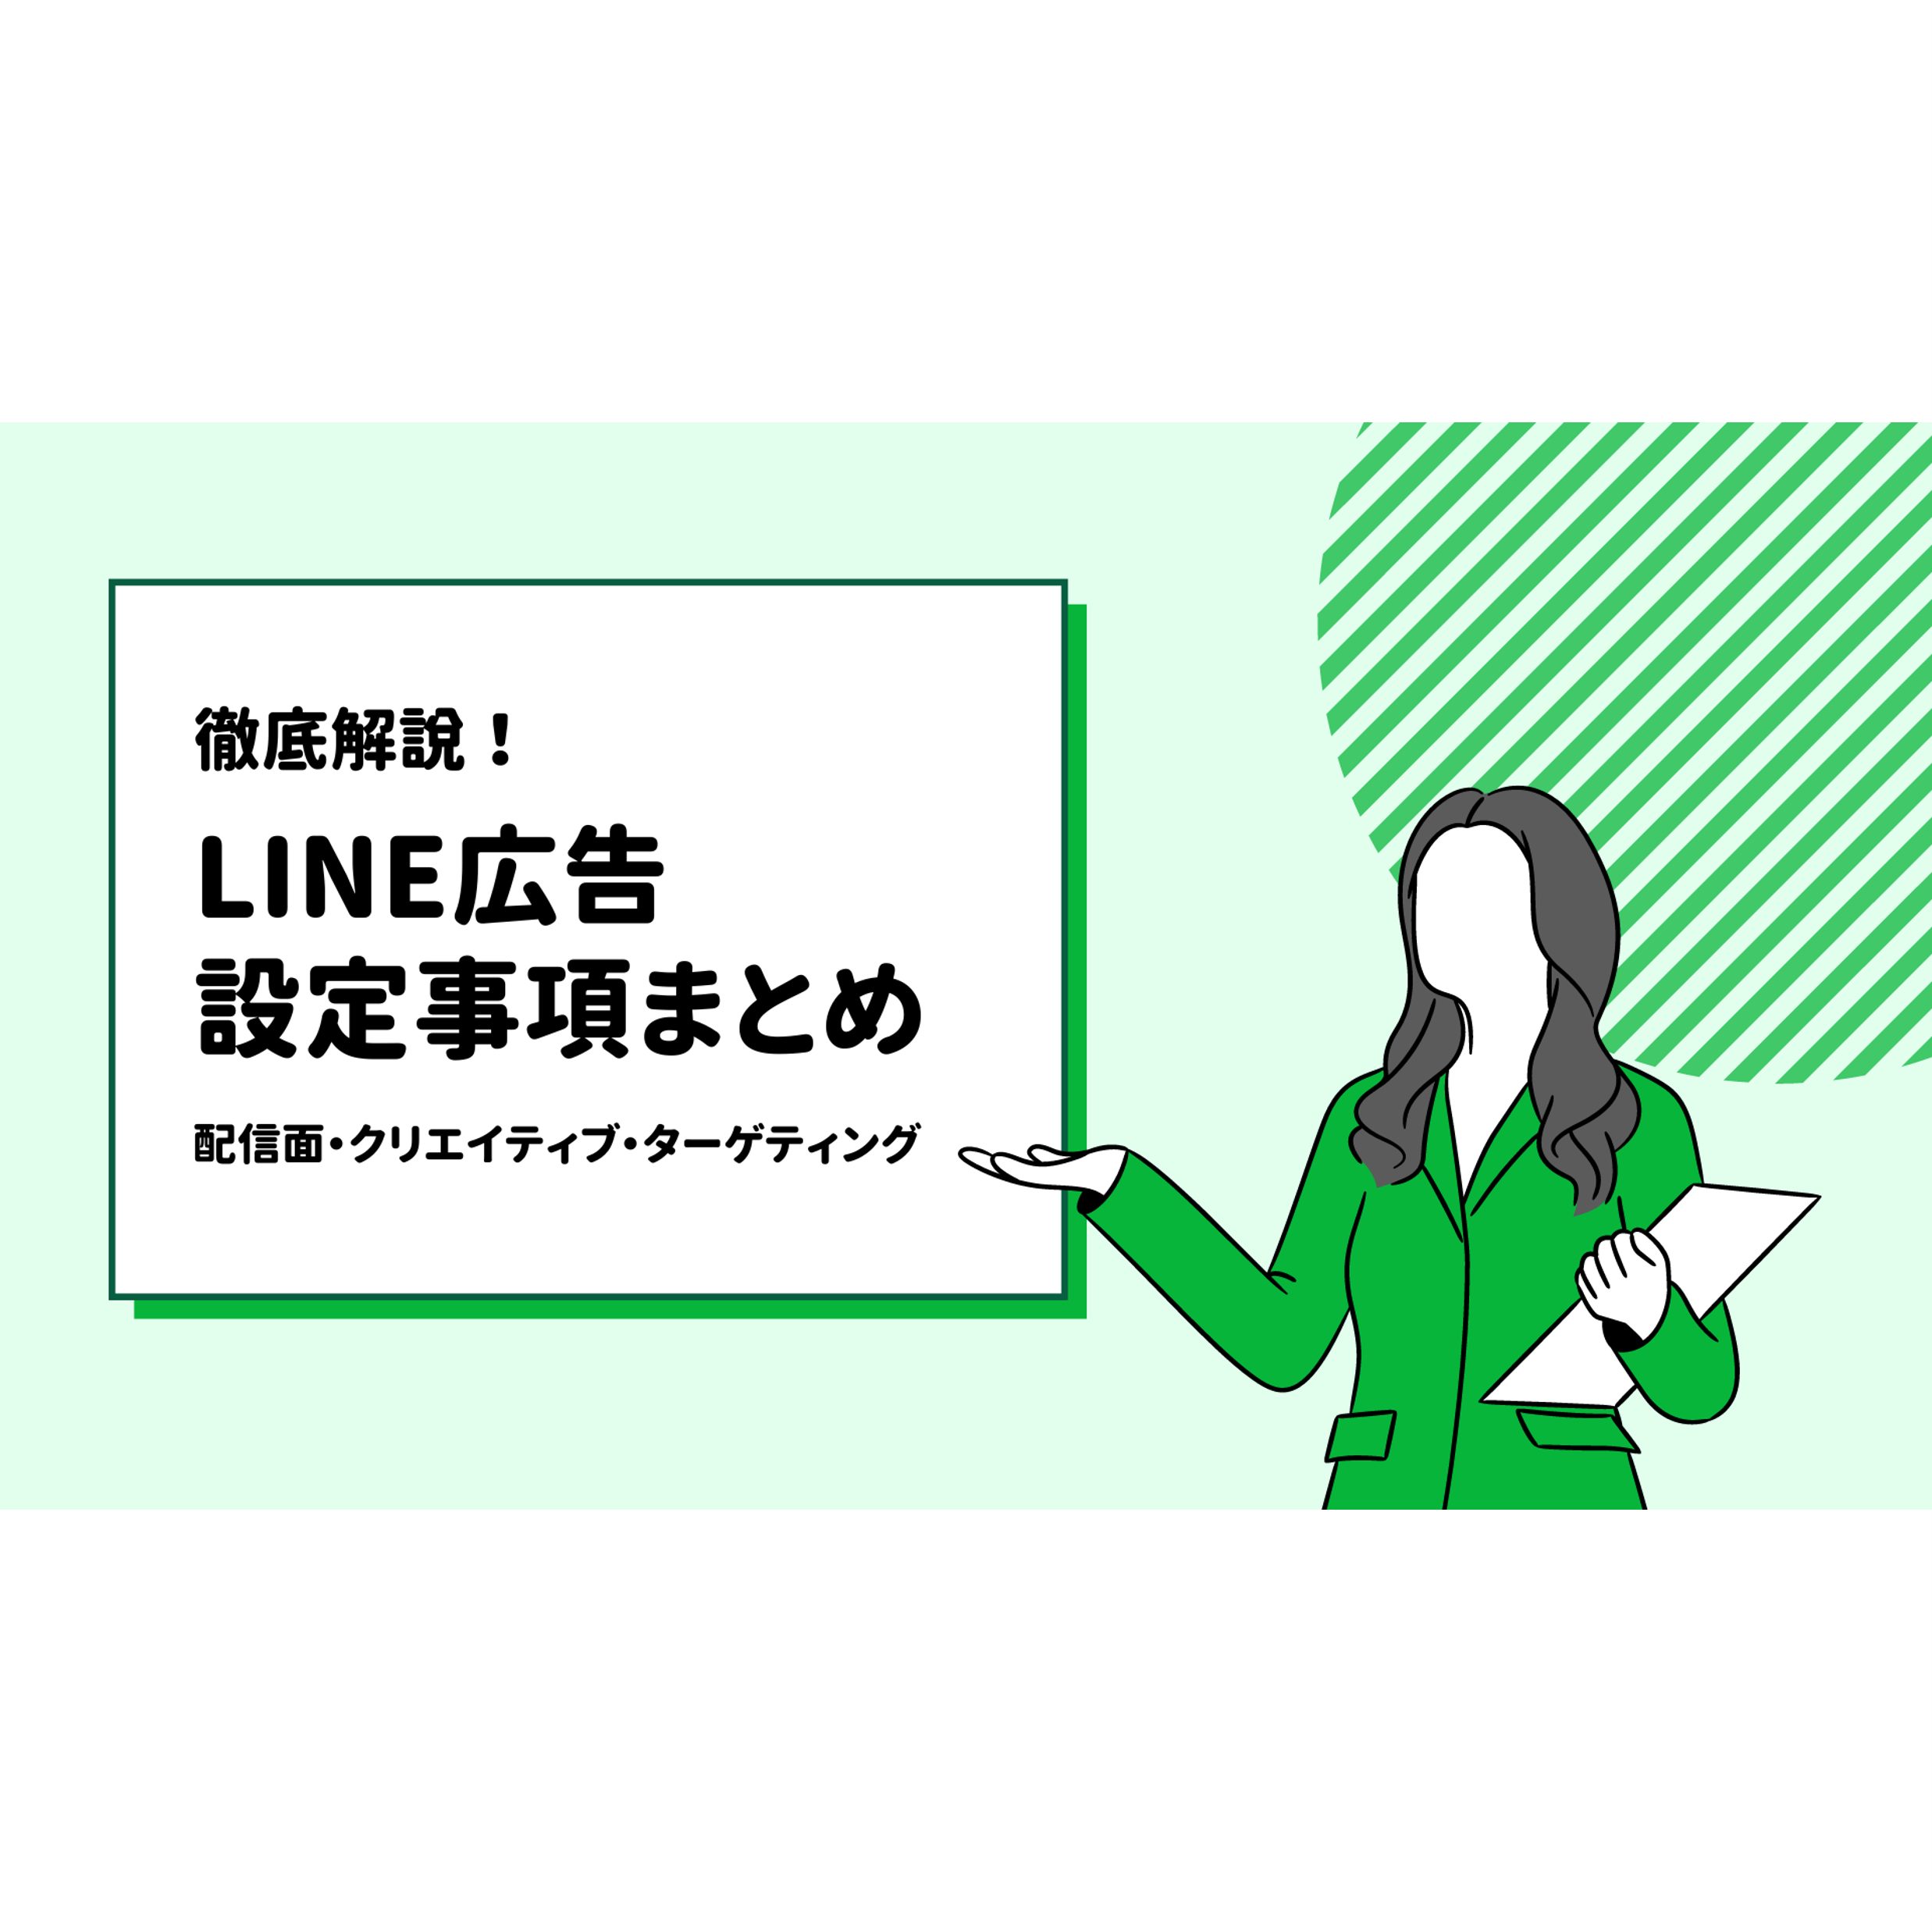 【随時更新】 LINE 広告 設定事項まとめ。配信先やバナーサイズ、ターゲティングを徹底解説！ | 株式会社グラッドキューブ